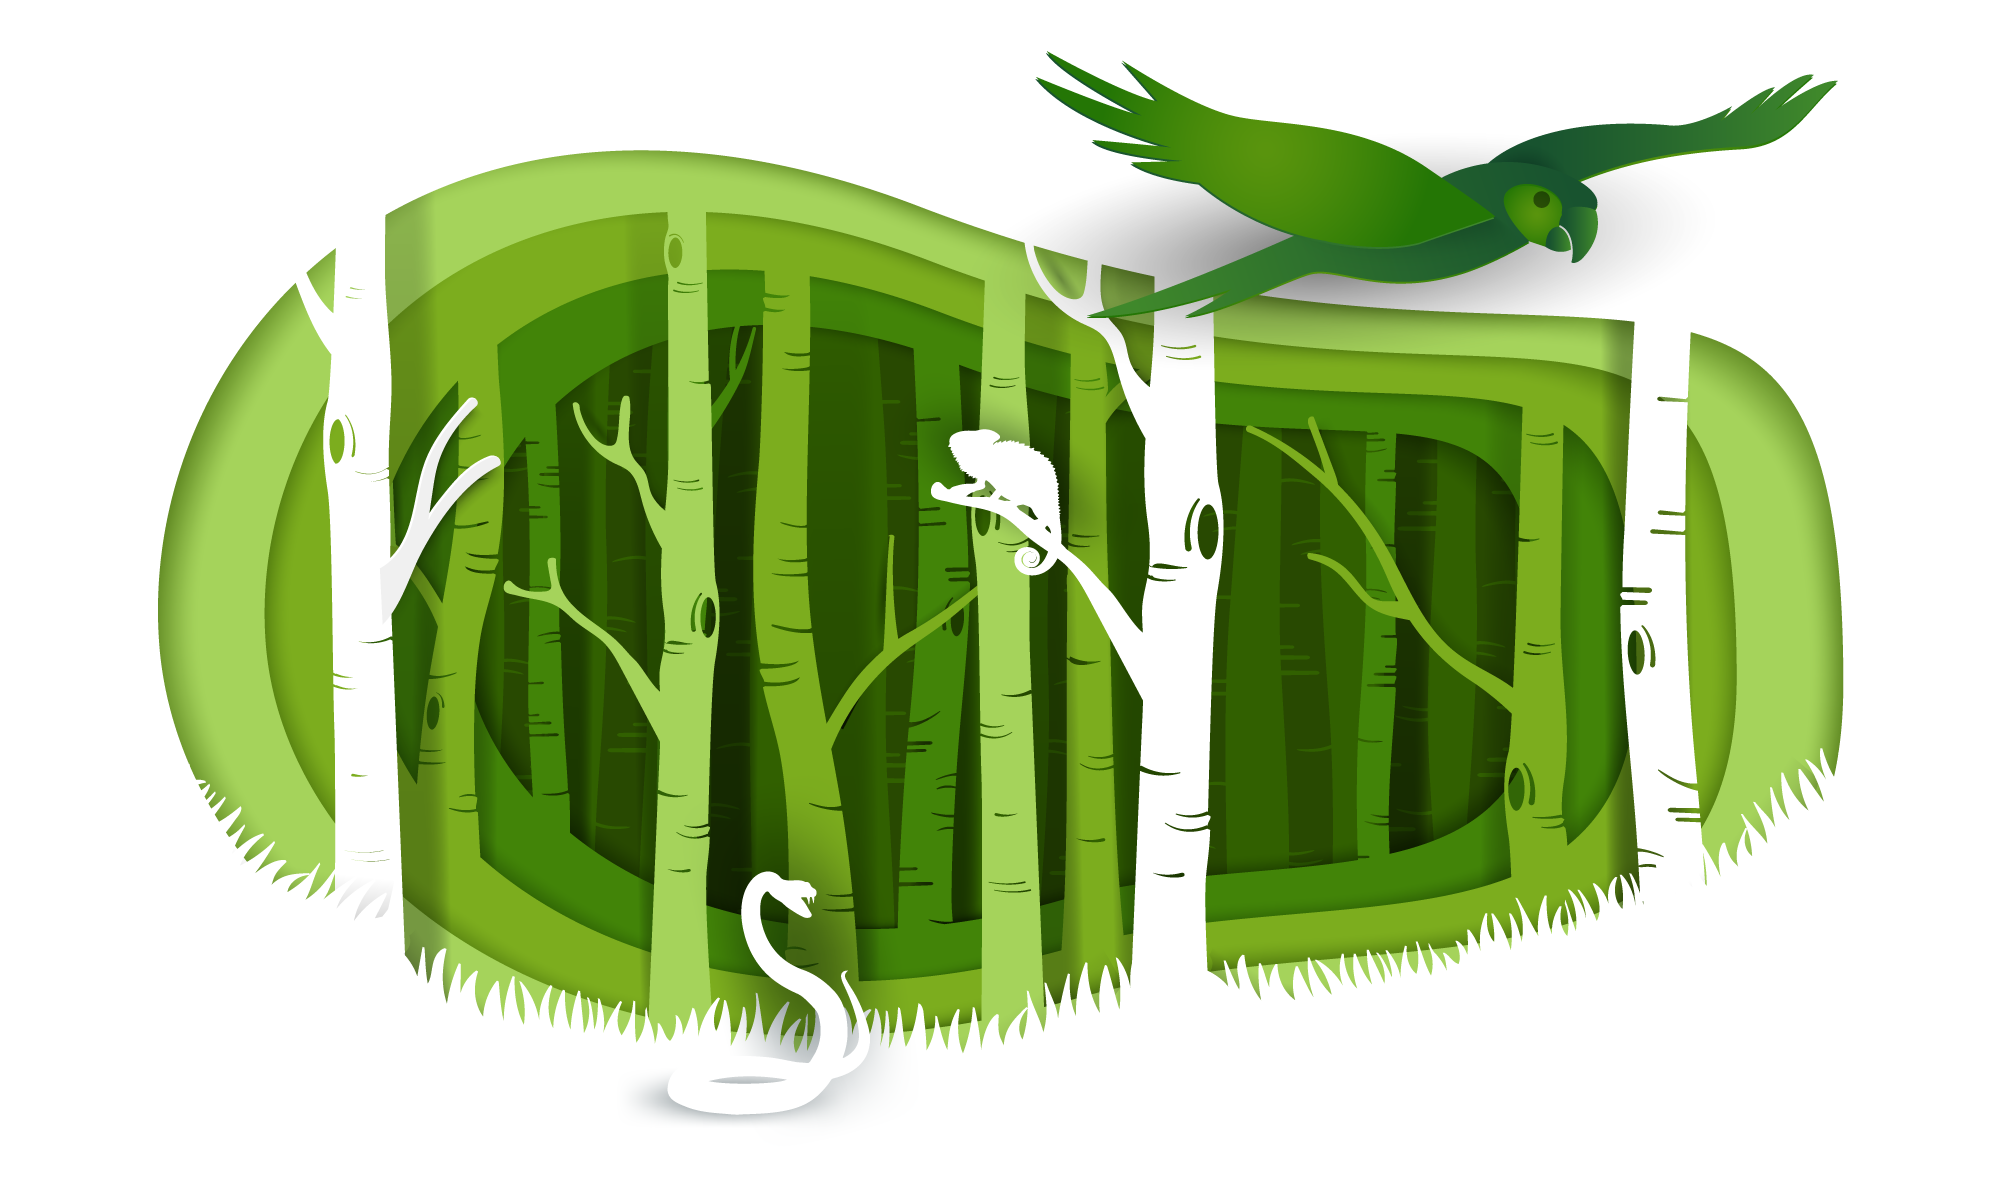 Ilustración de un bosque con la silueta de una serpiente, un camaleón y un pájaro